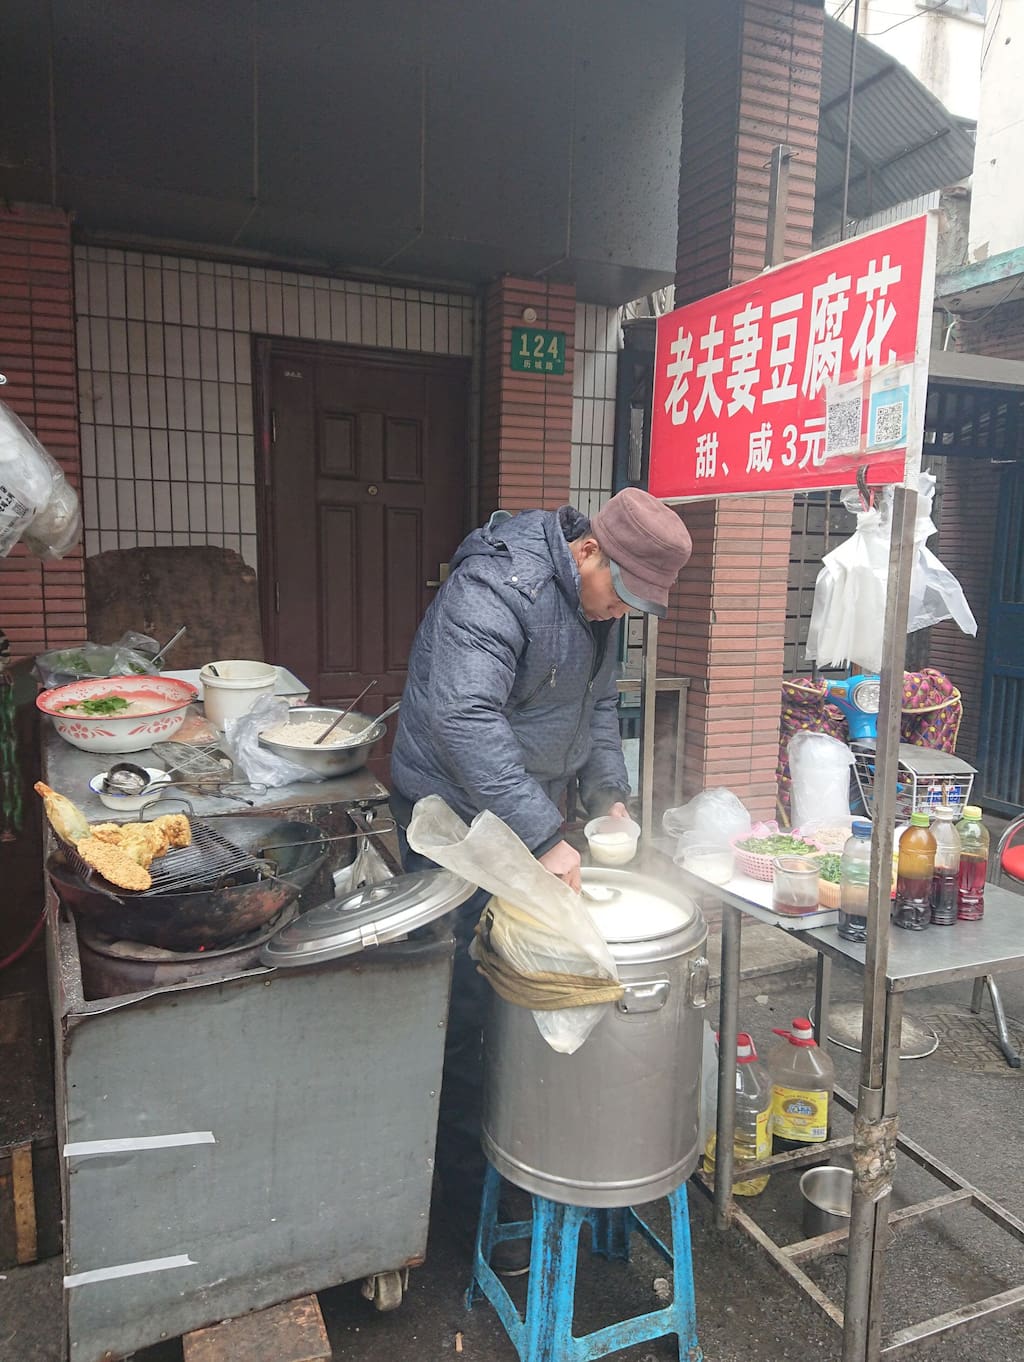 还不去逛夜市 小鲜肉油墩子 有荠菜哦 上海旅游攻略 尽在airbnb爱彼迎